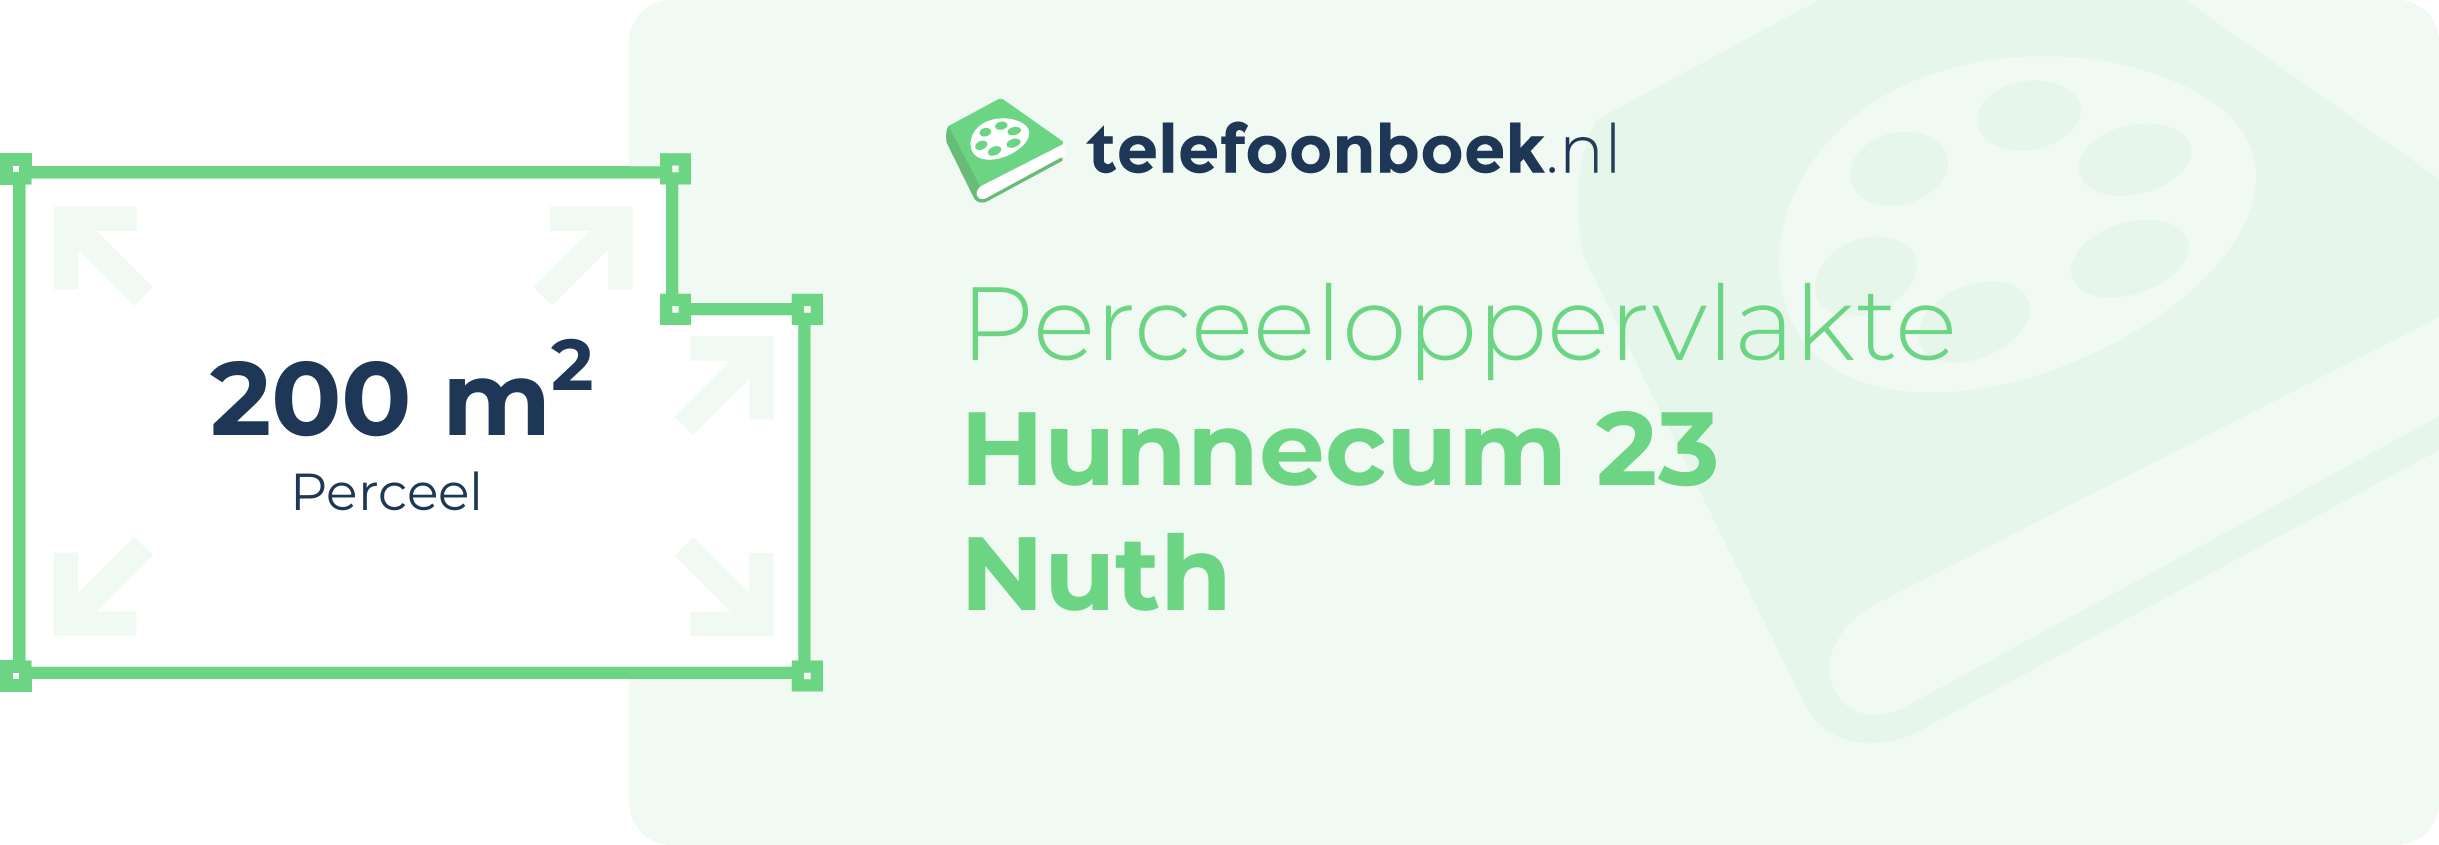 Perceeloppervlakte Hunnecum 23 Nuth